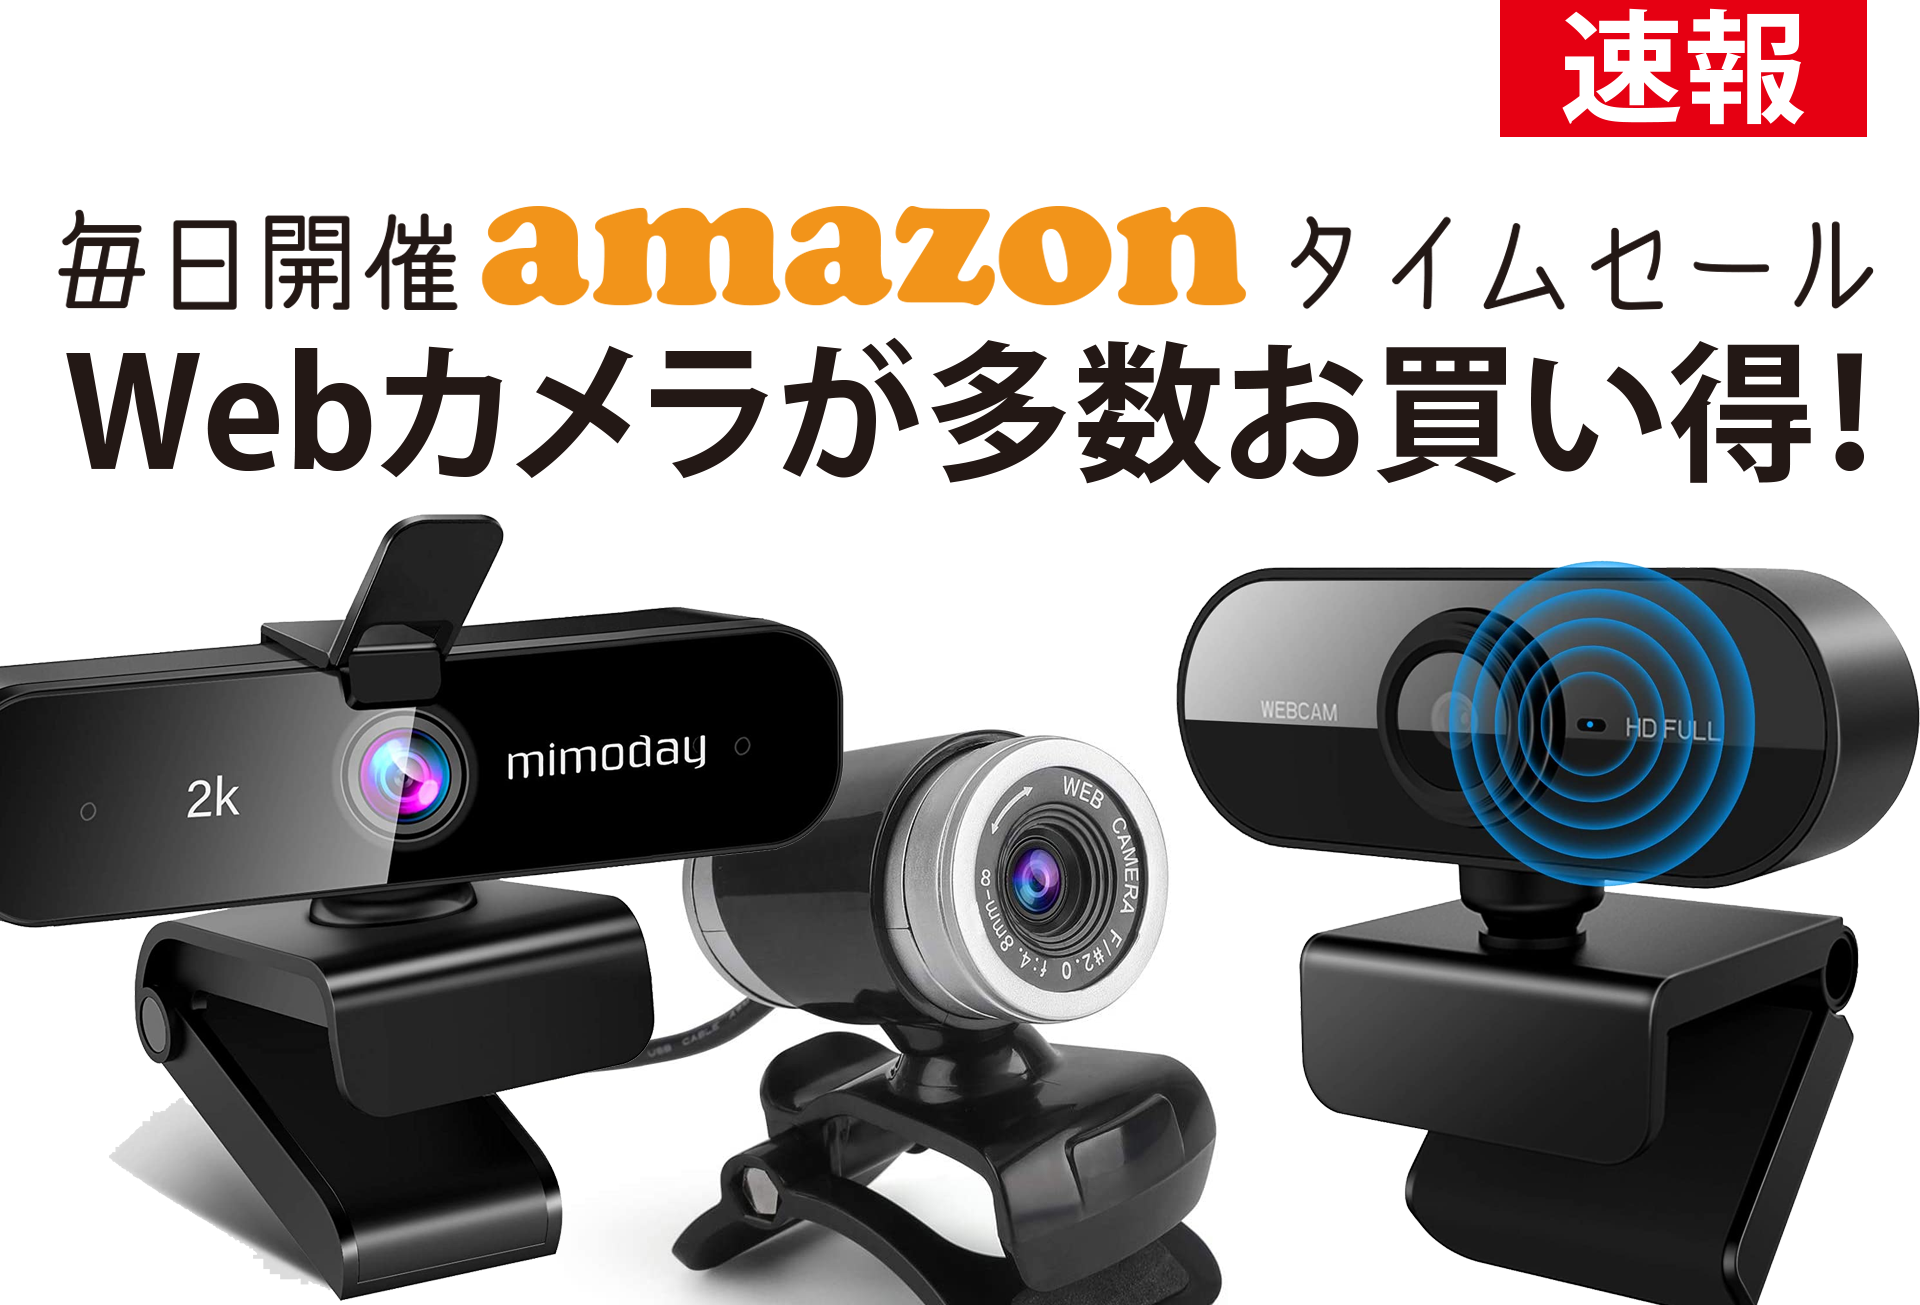 21.2/17限定】毎日開催Amazonタイムセール、Webカメラが多数お買い得！ | Webカメラ(ウェブカメラ )専門情報サイト【webcamera.jp】